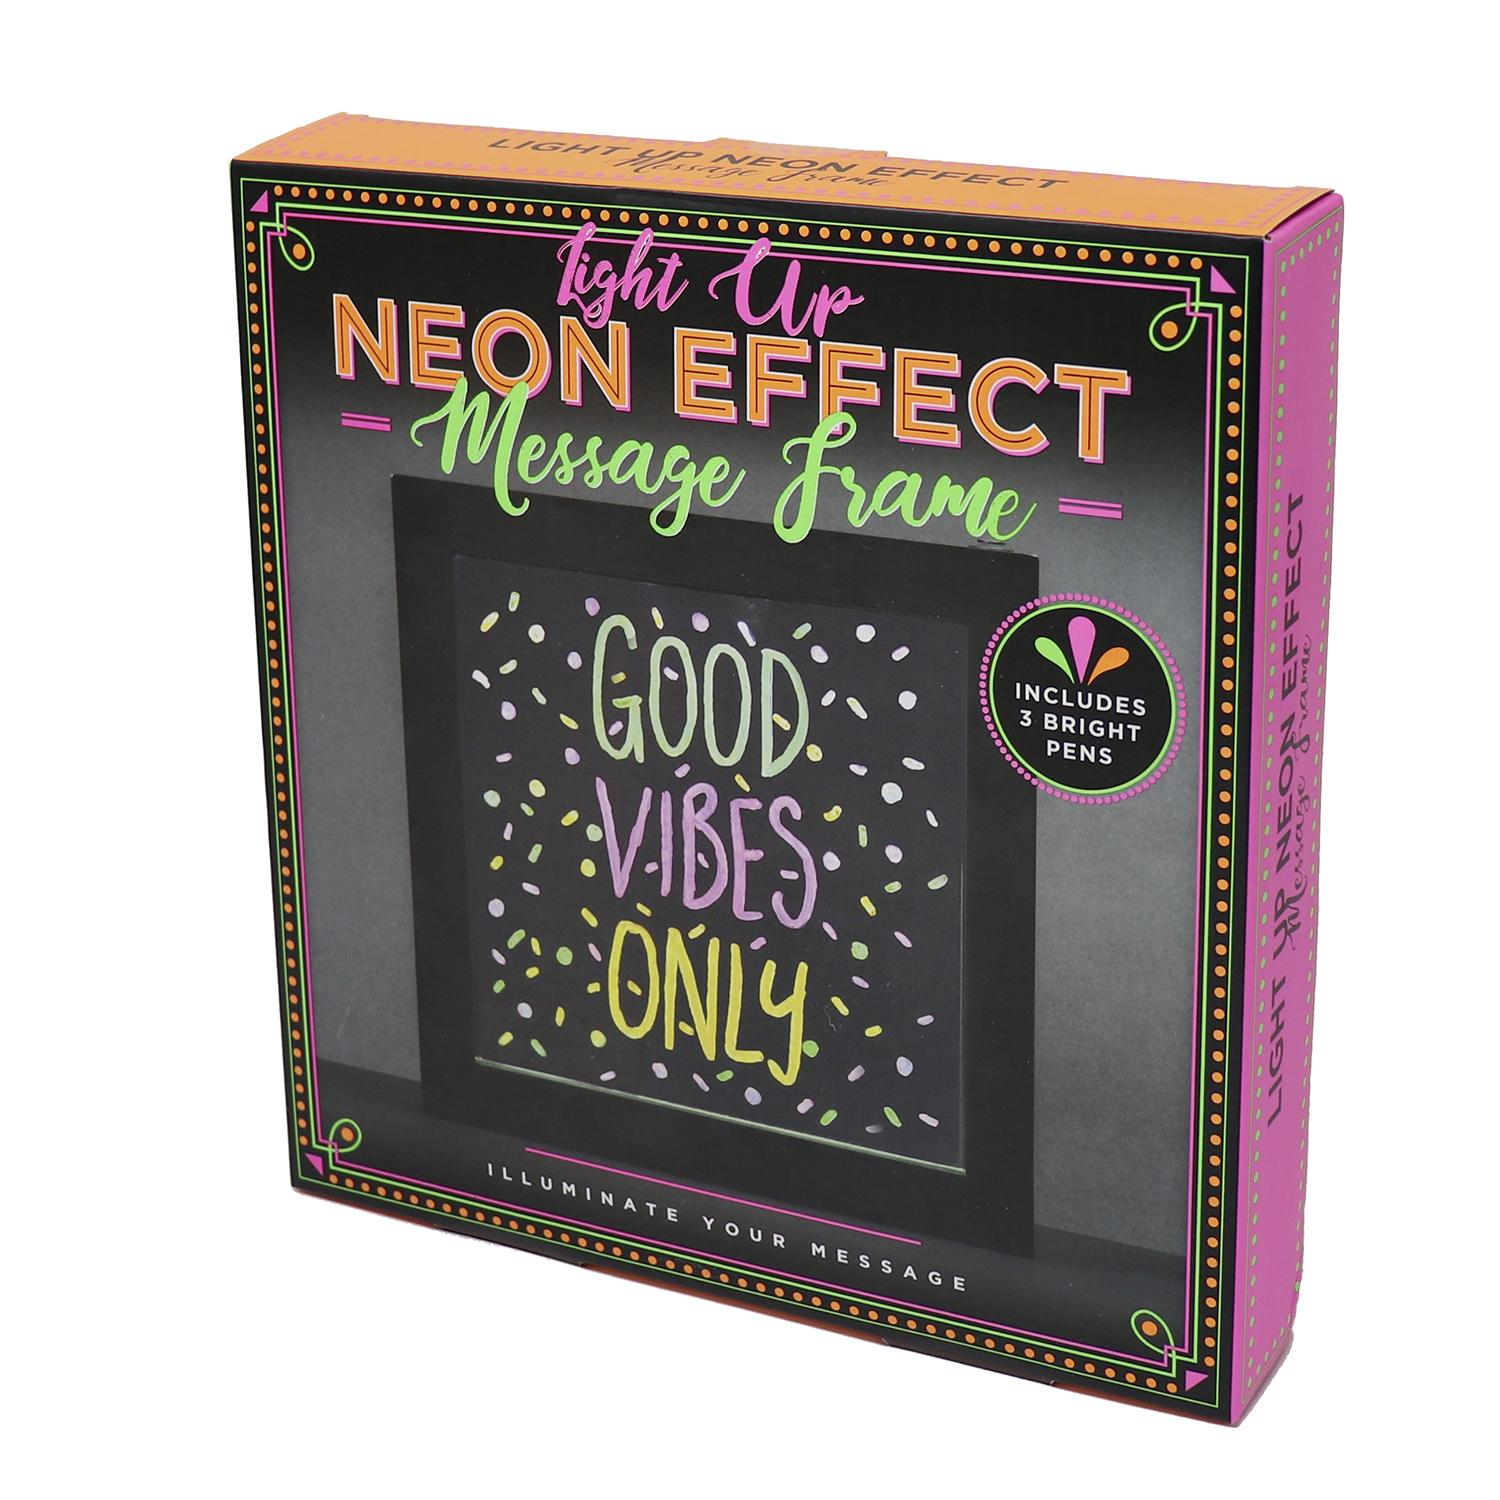 Light Frame Message Up CREATIONS FIZZ Merchandise Effect Neon